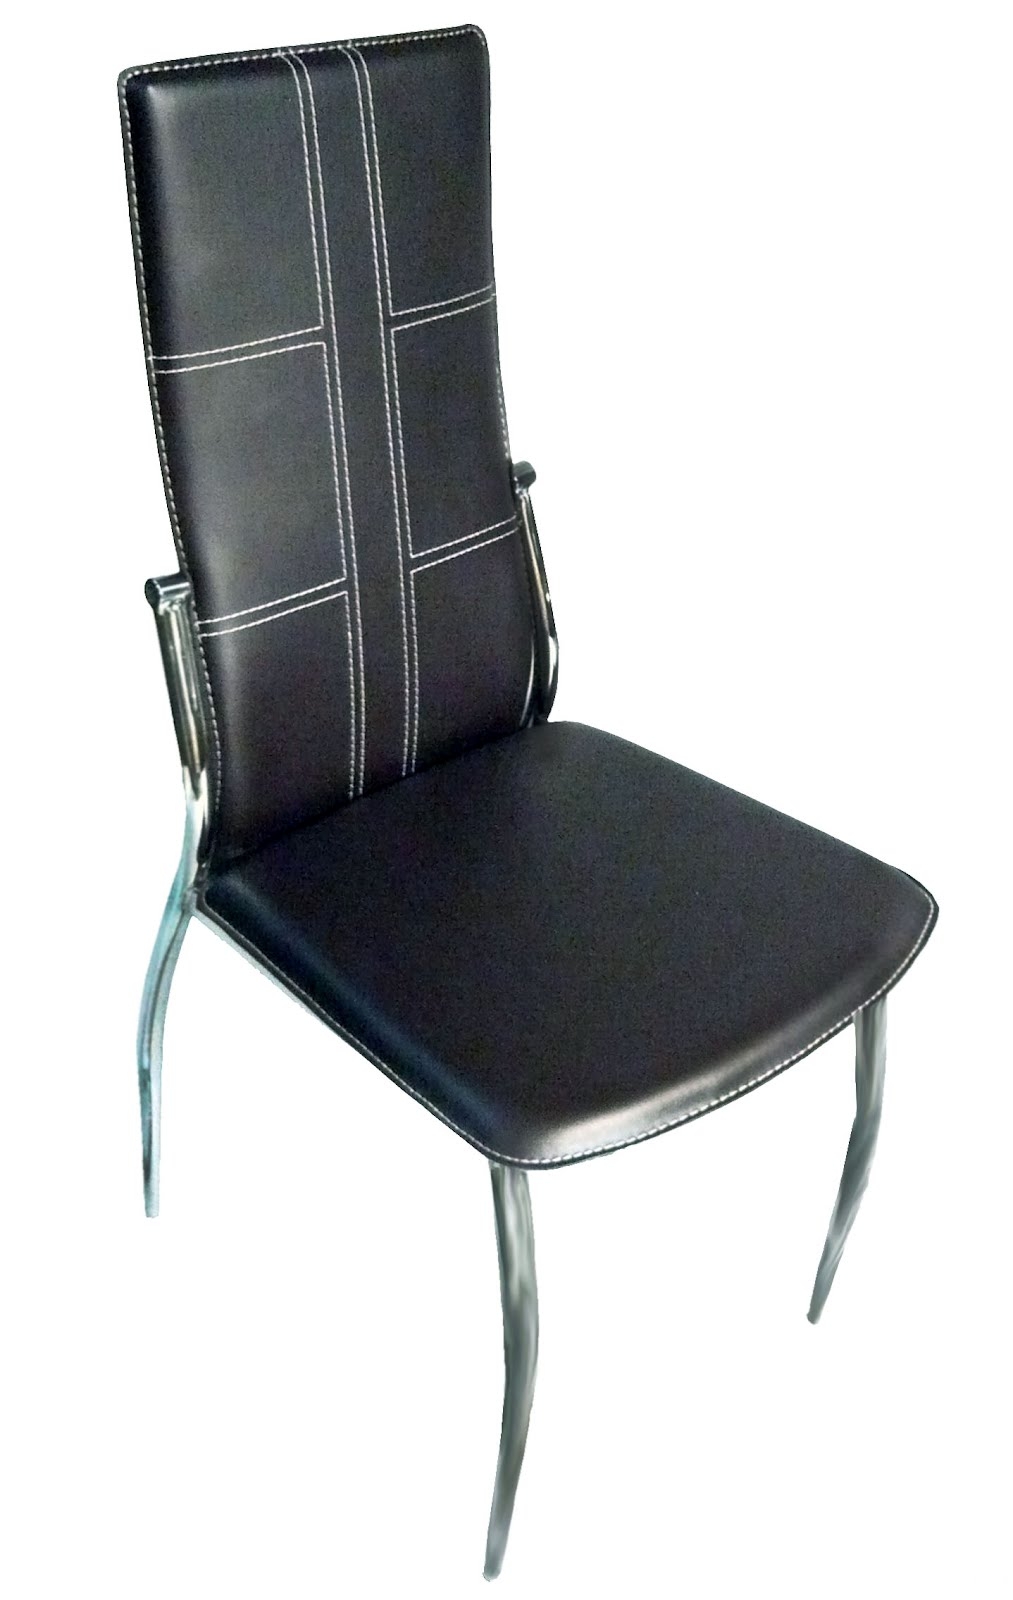 стулья на металлокаркасе китай